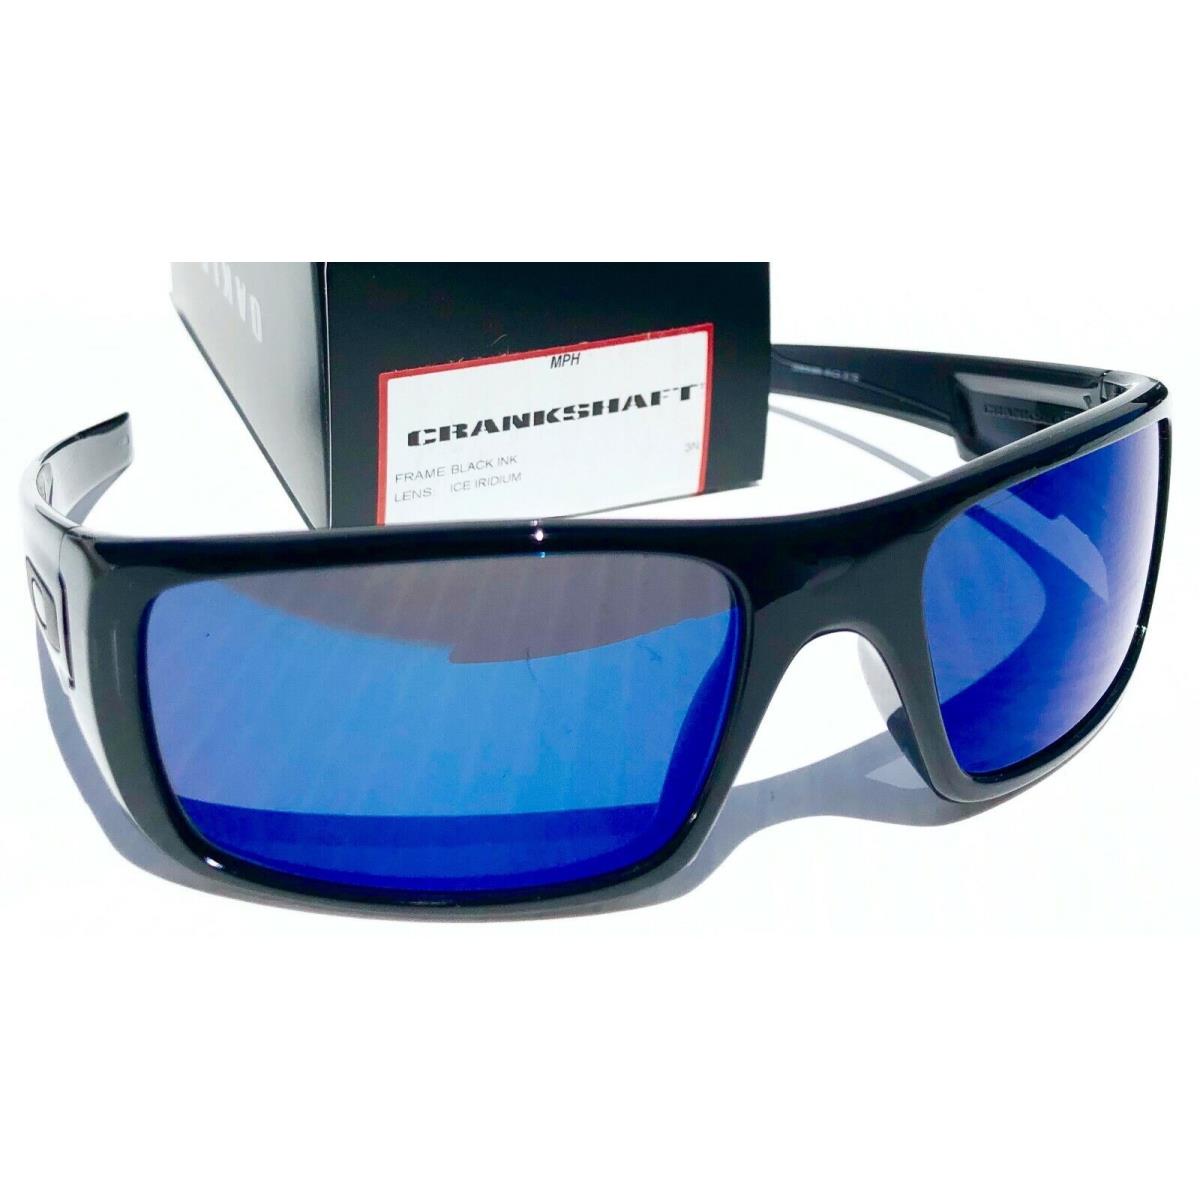 Oakley sunglasses Crankshaft - Black Smoke Crystal Ink Frame, Blue Lens 3